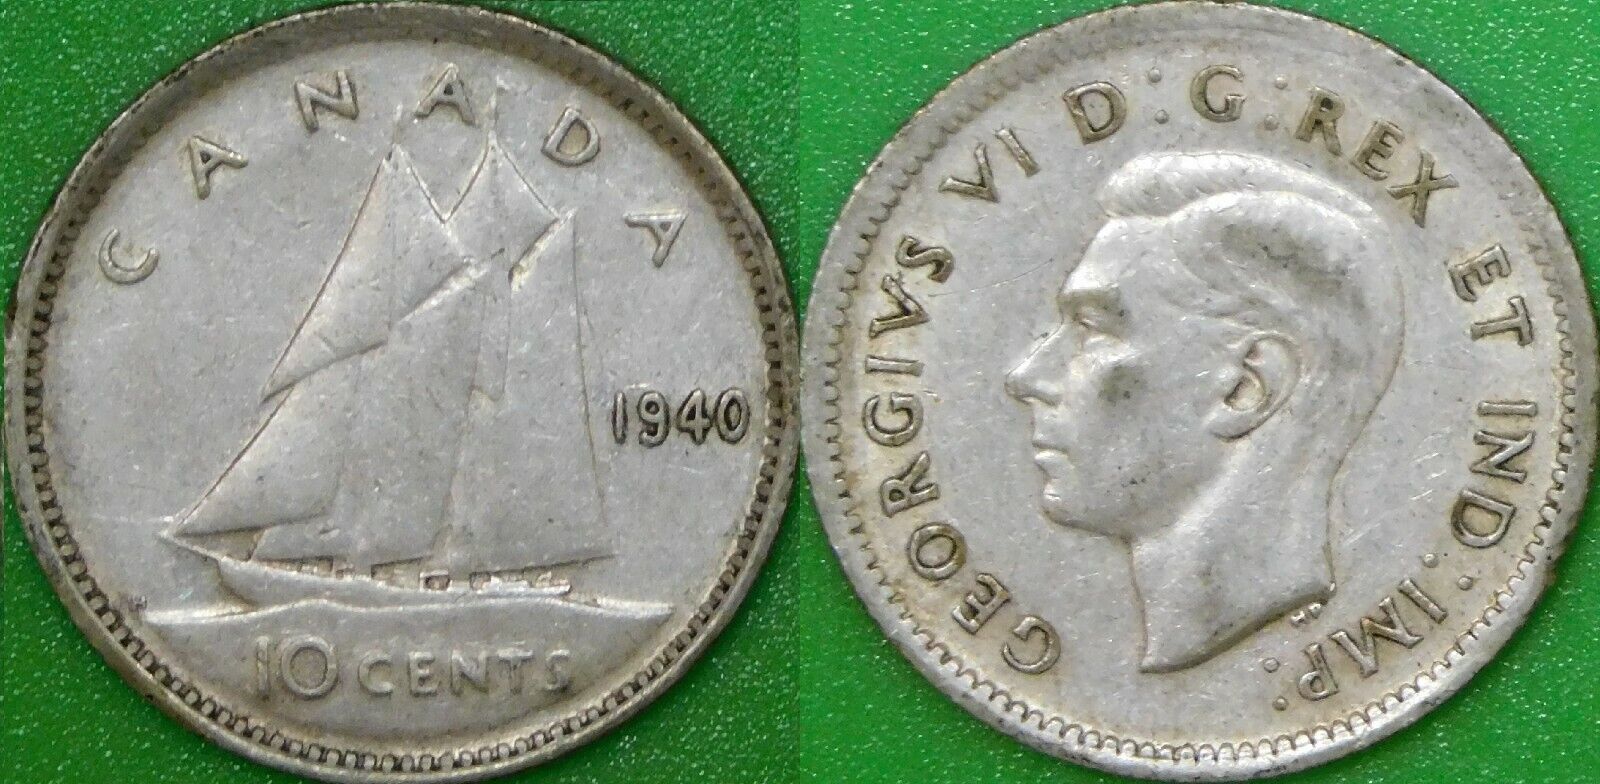 1940 Canada Silver Dime Graded As Fine